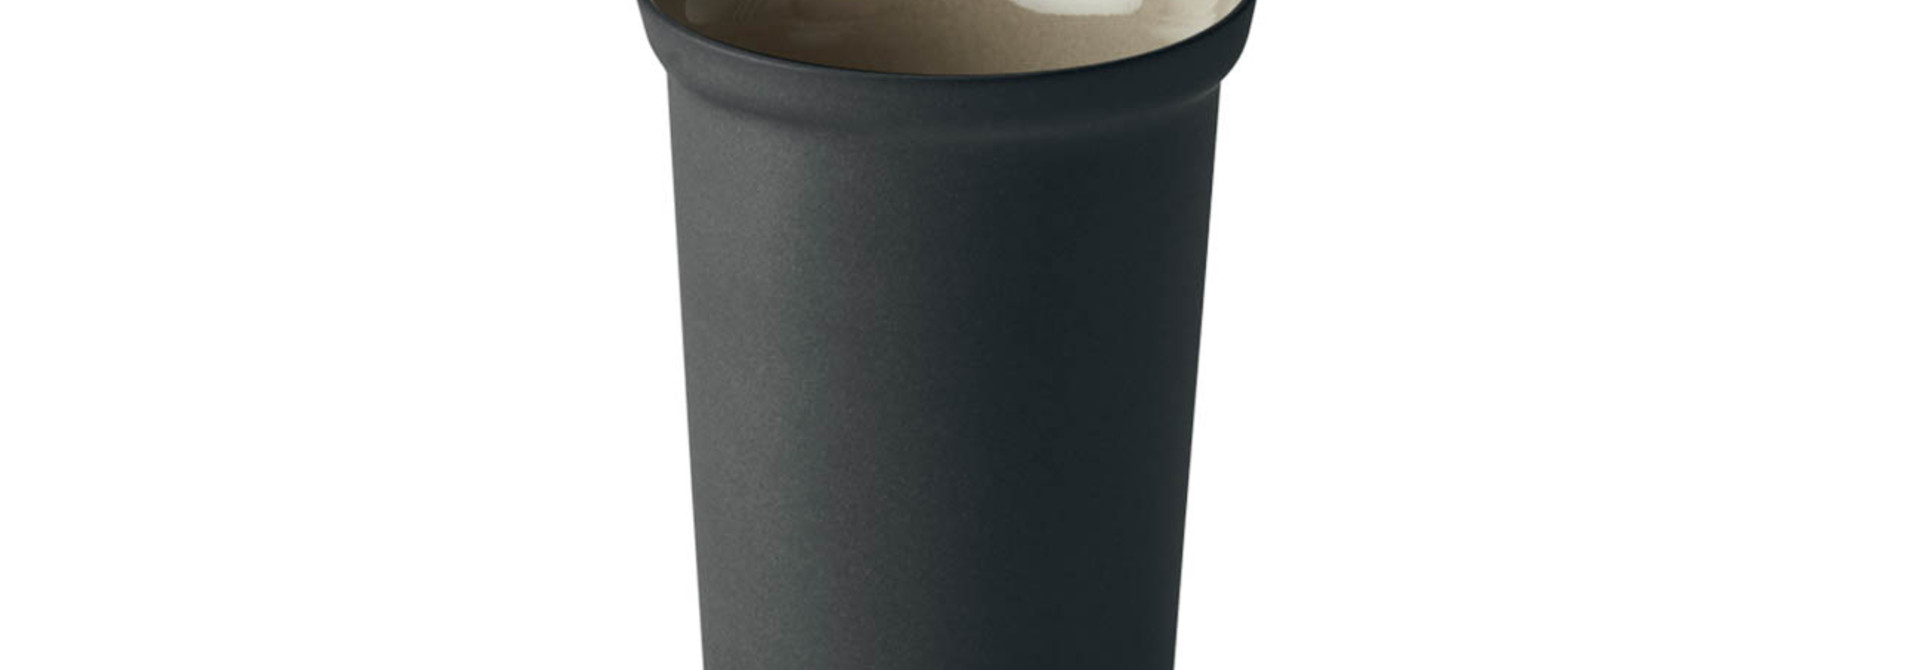 Espresso Water Cup - Black&Ivory -Esma Dereboy 6X6X8.5 cm